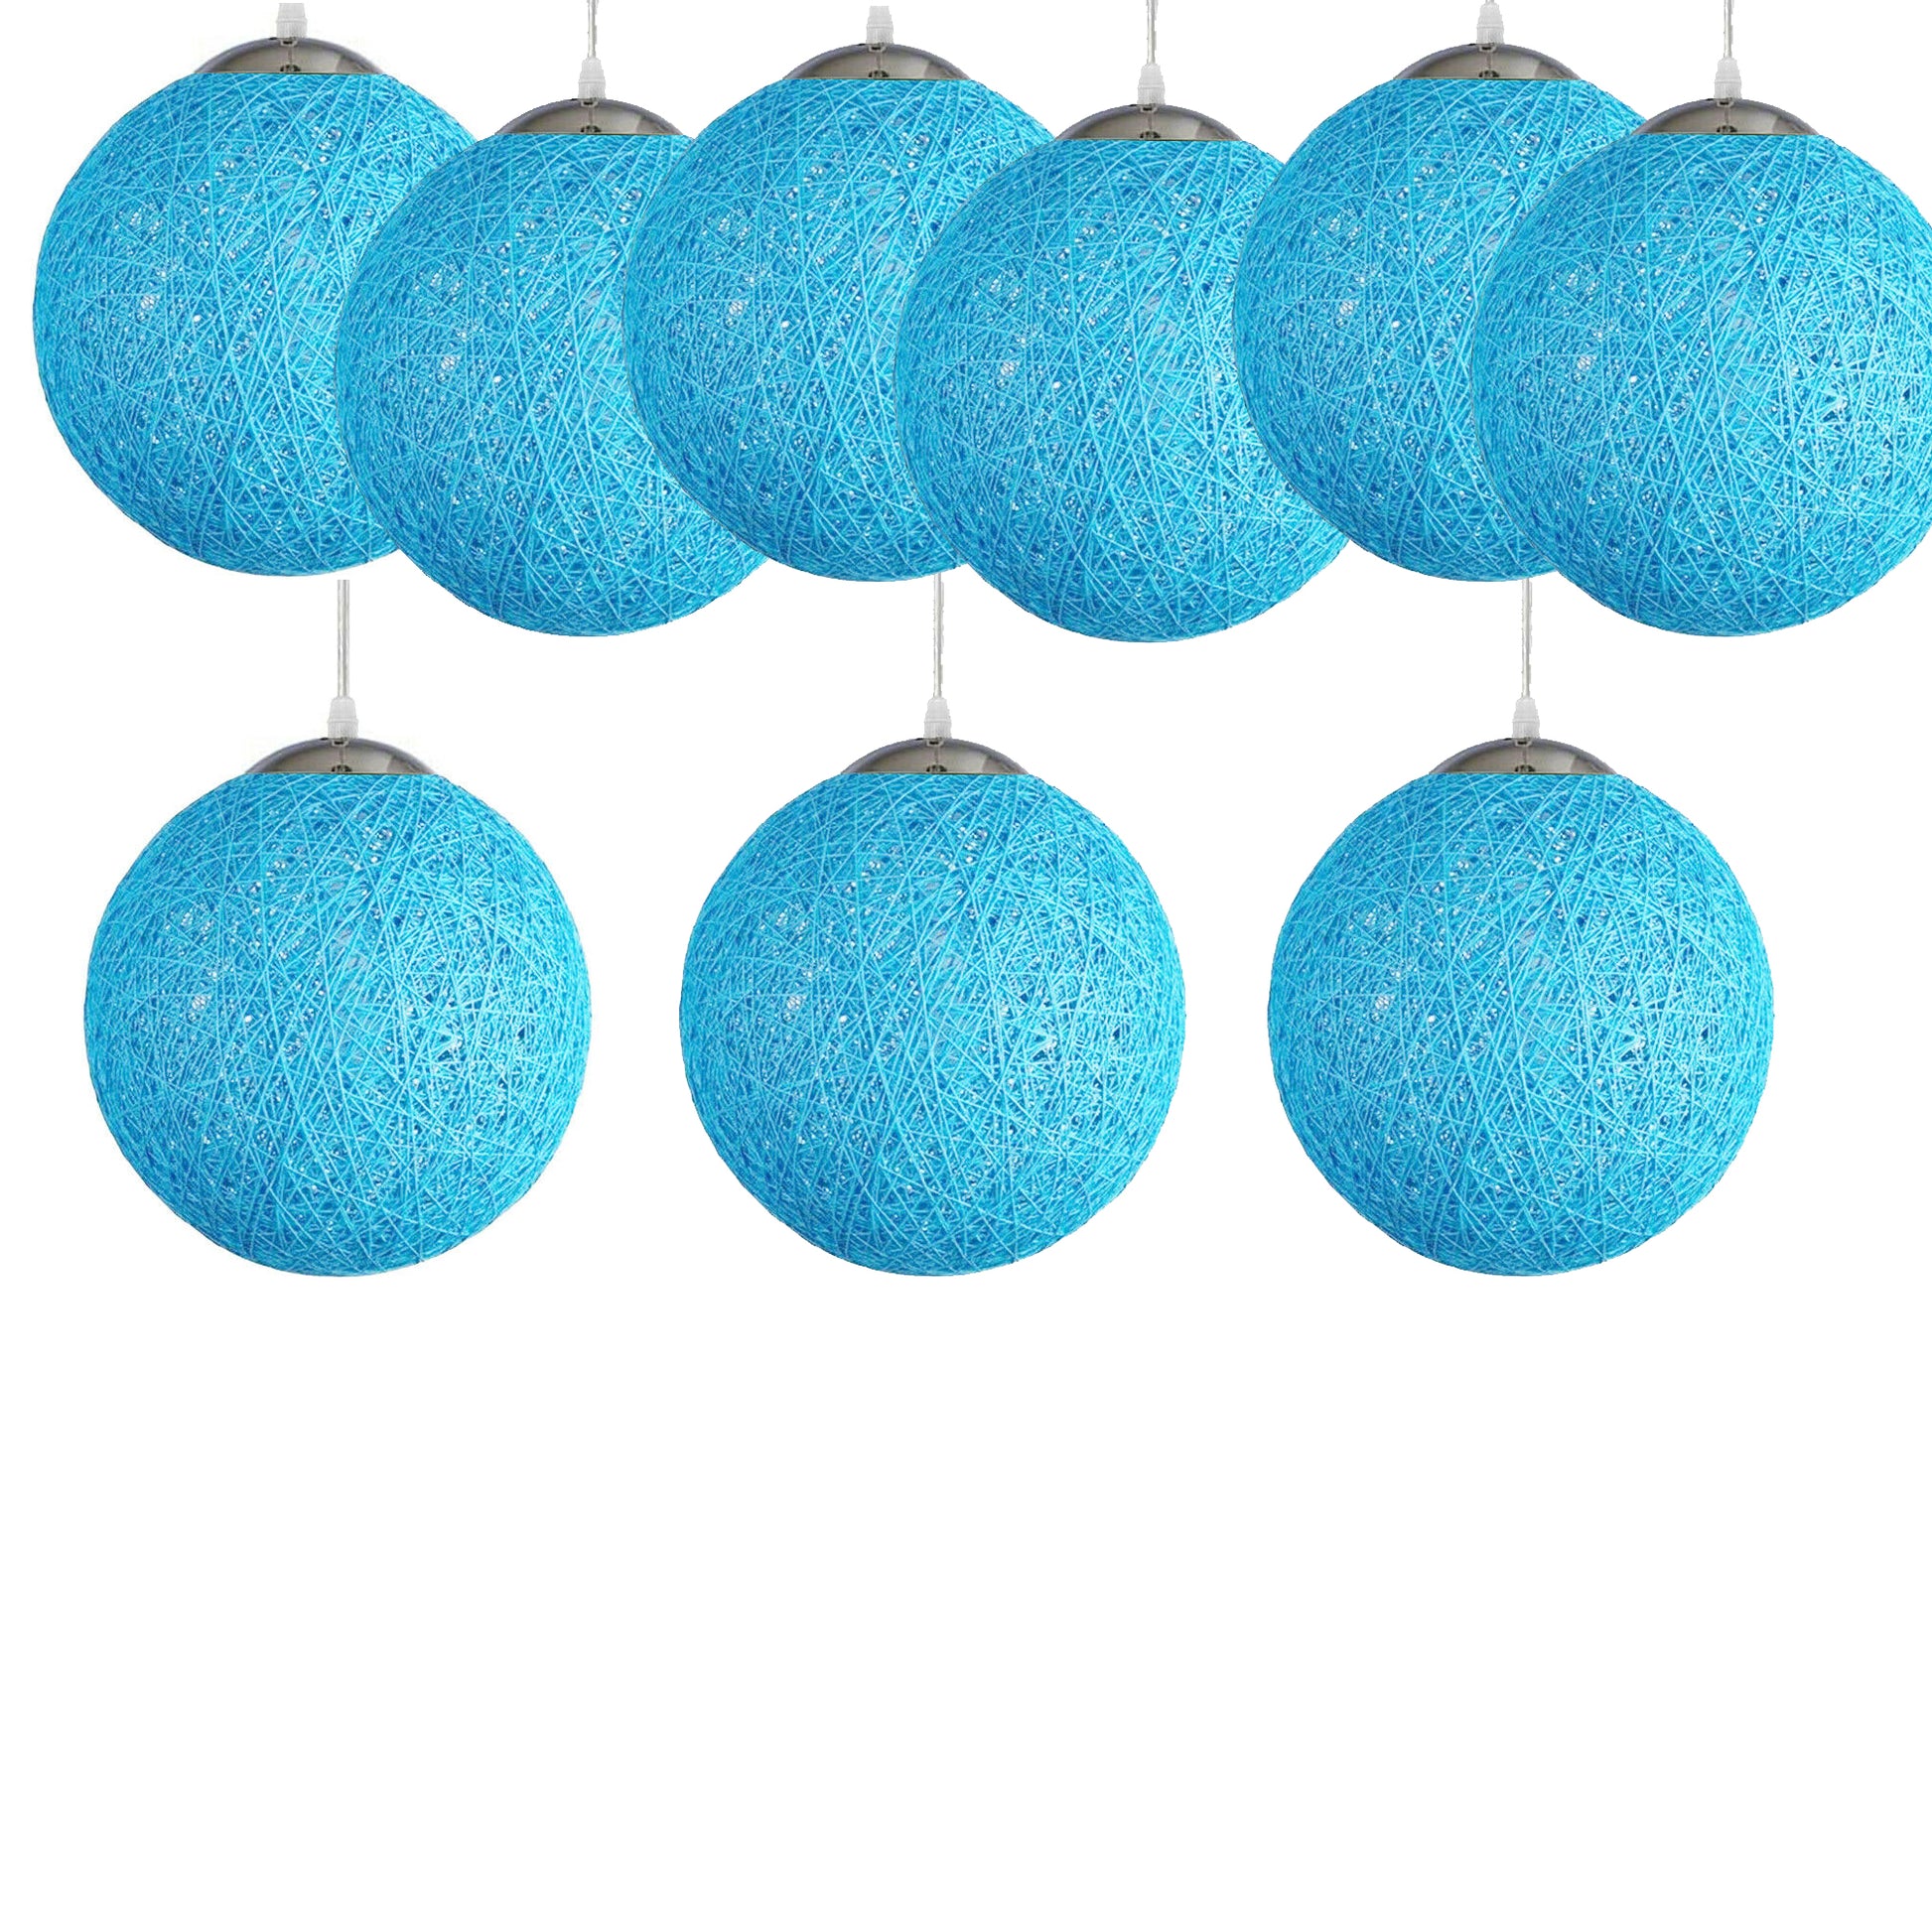 Blue Celling Pendant Light Shade Kitchen Bar Chandelier Hanging Lamp Ceiling Lights~1807 - LEDSone UK Ltd